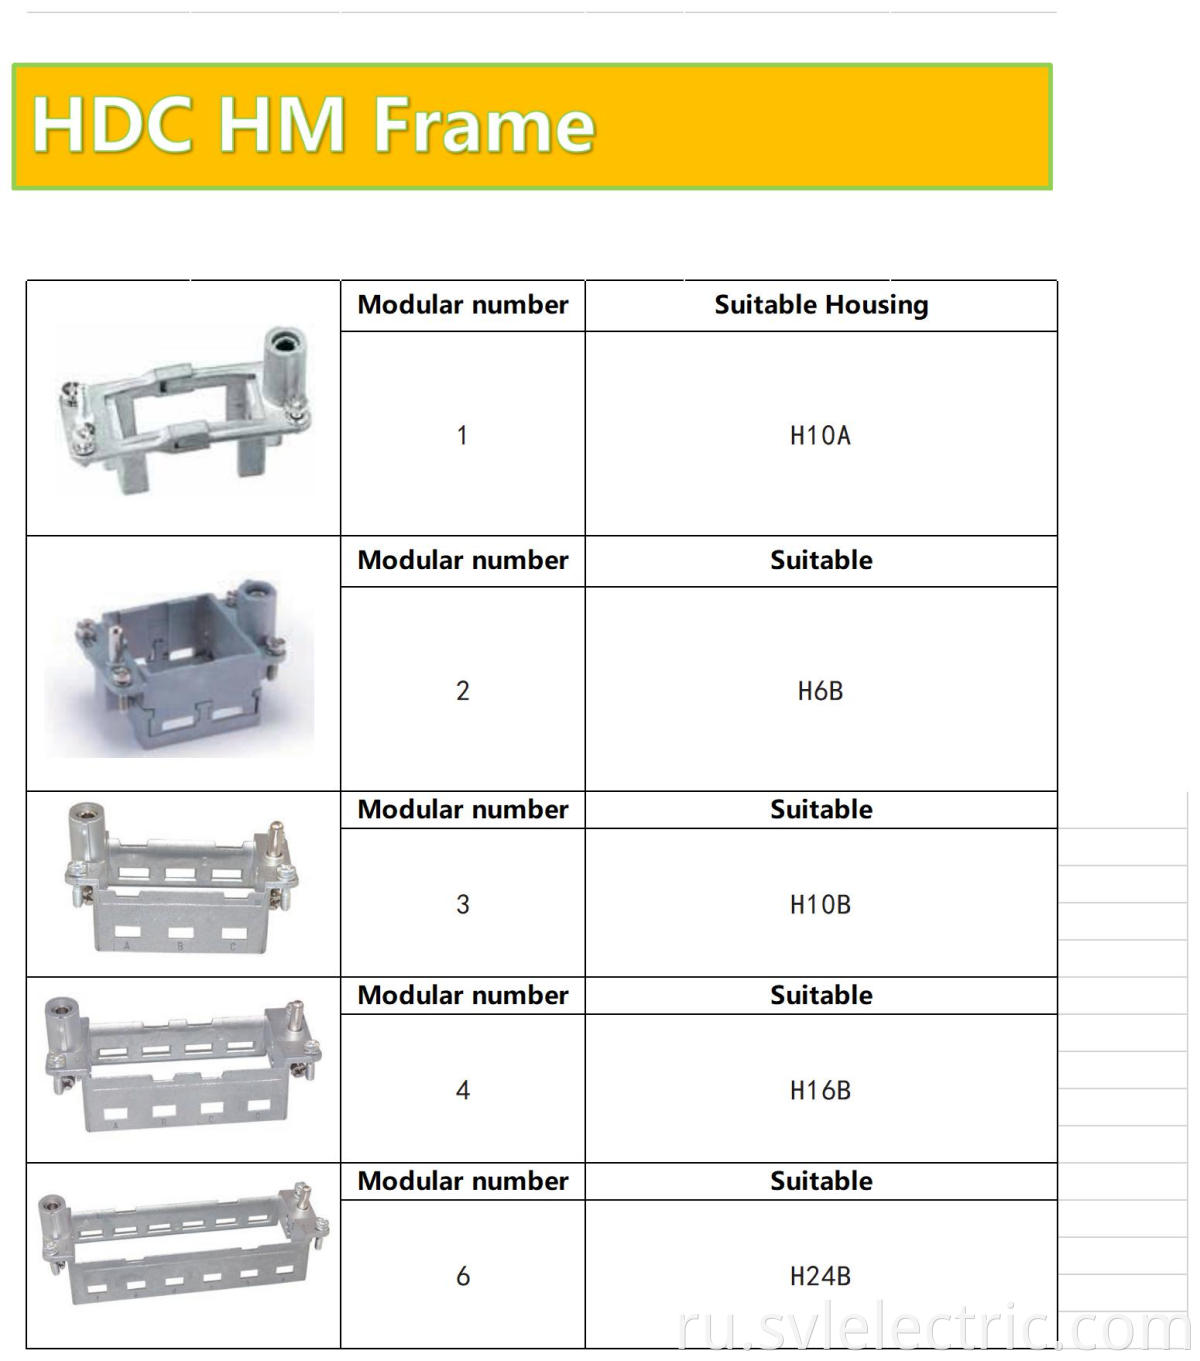 HDC modular frame